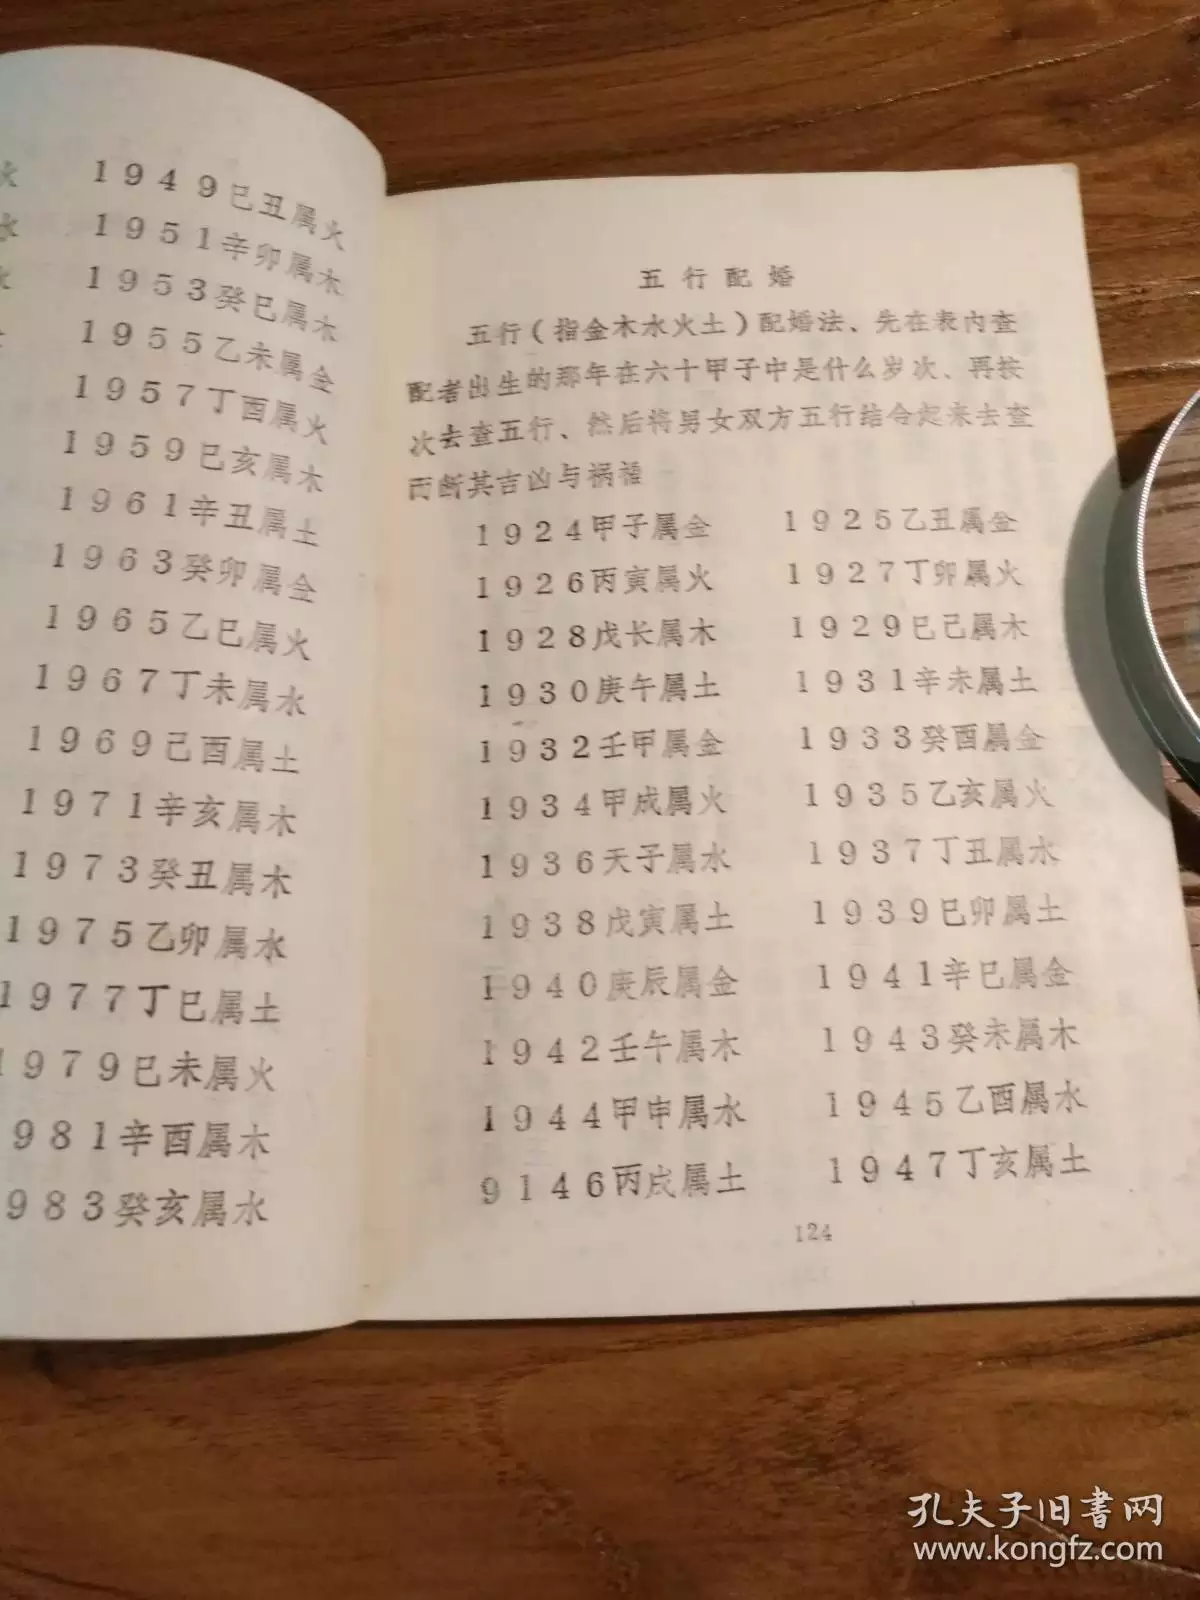 4、男女命合婚表:中国古代男女婚配表。